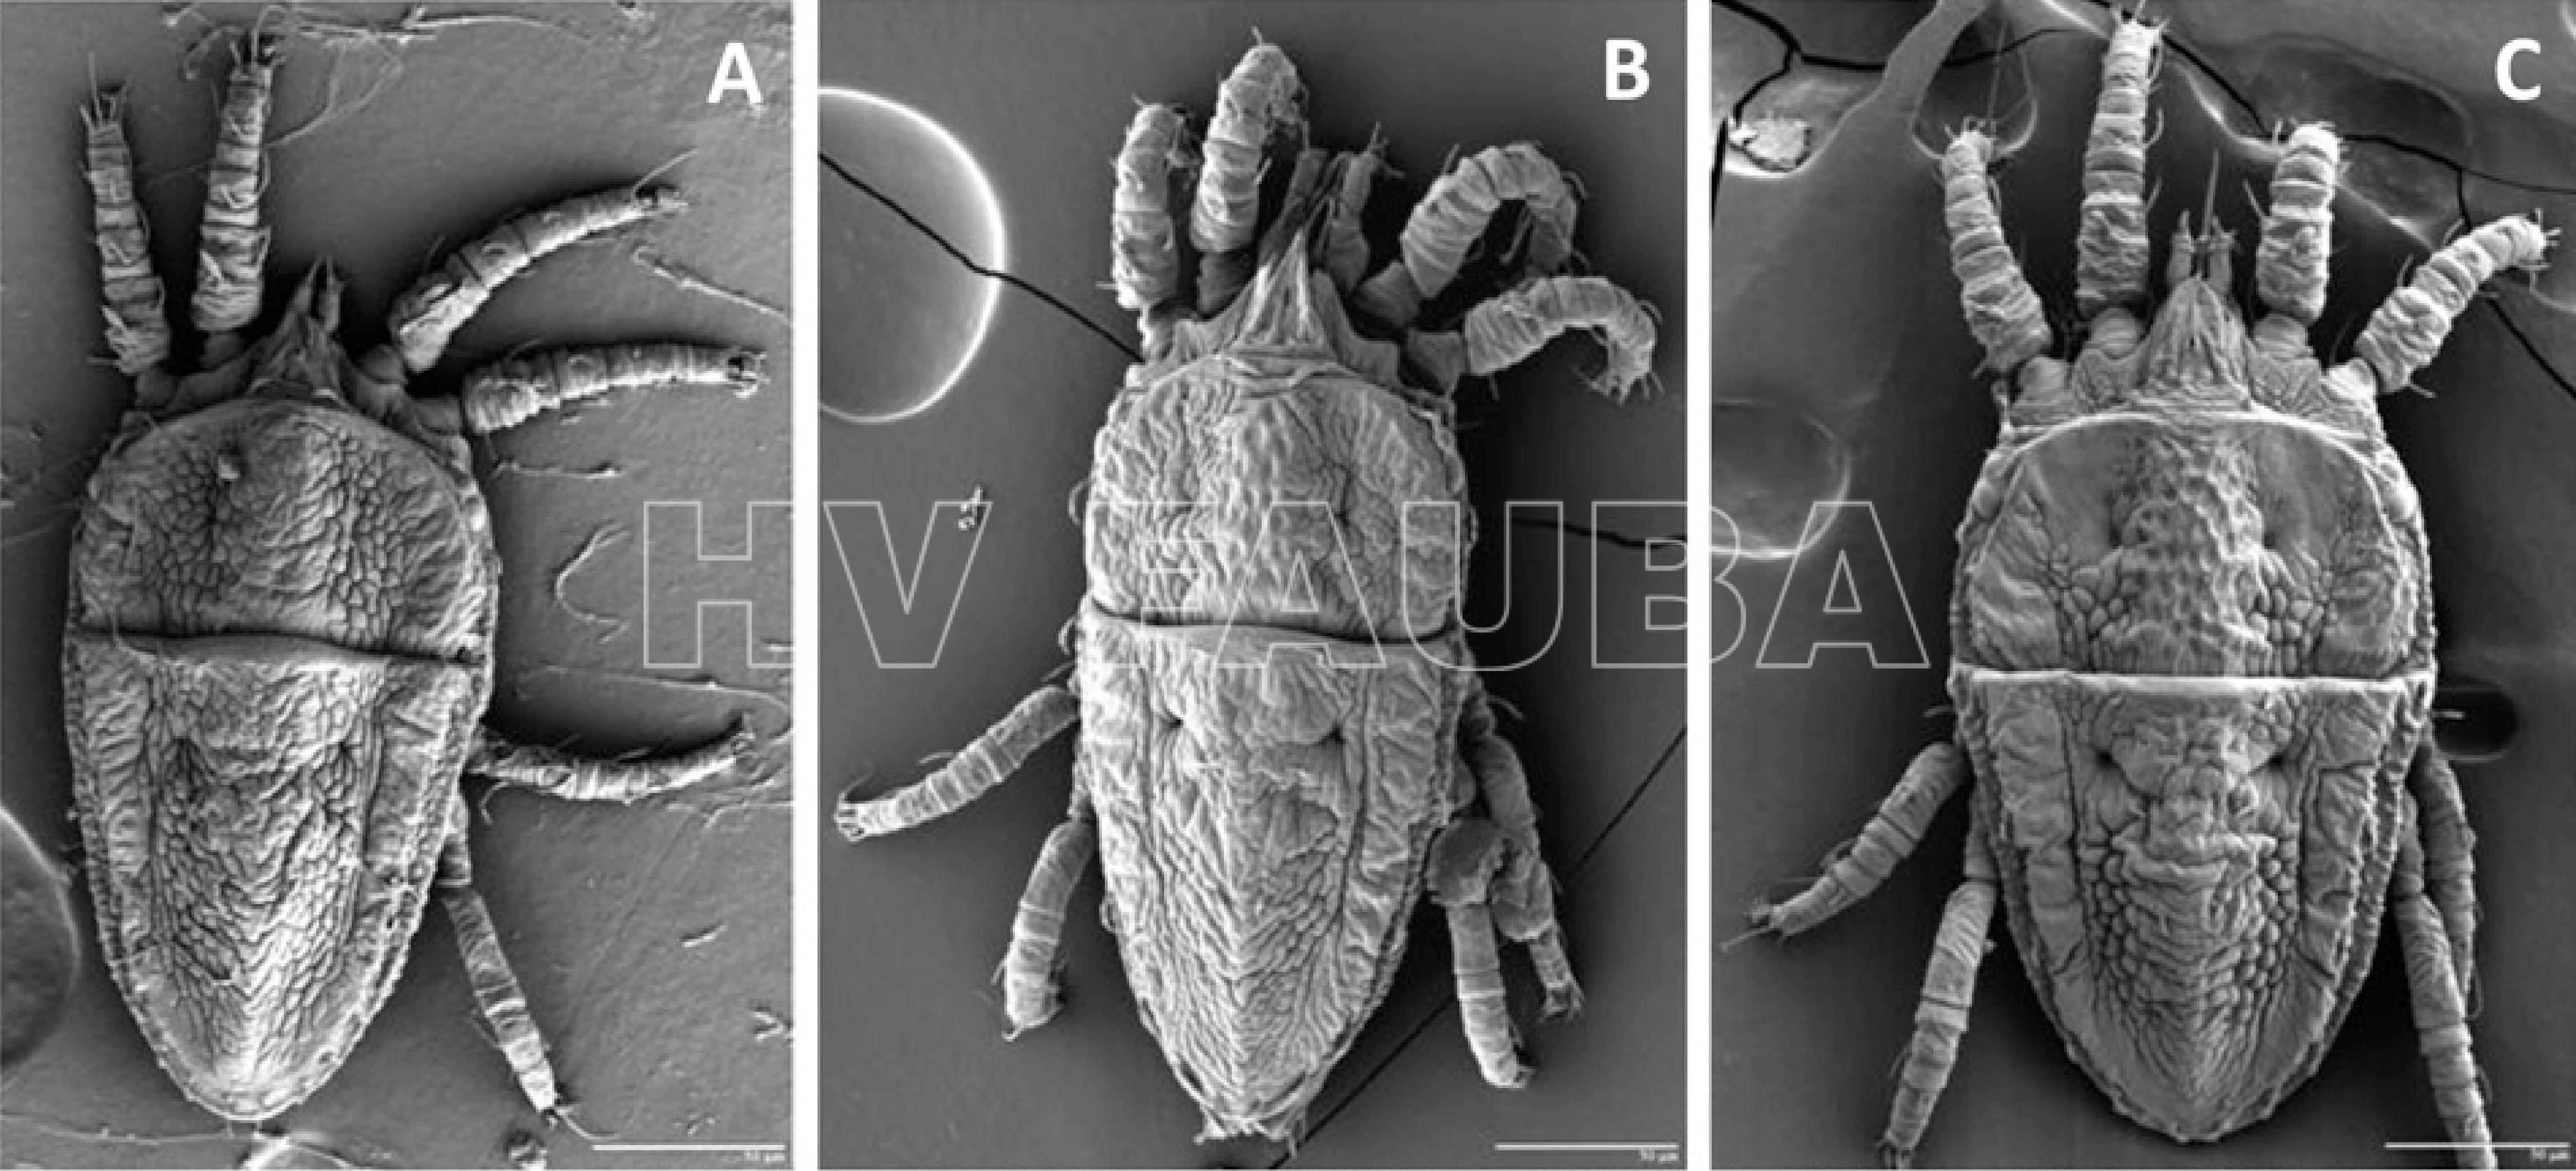 Identificación morfológica de especies de Brevipalpus asociadas con Citrus leprosis virus C (CiLV-C) y CiLV-N mediante microscopía electrónica de barrido a baja temperatura. Imágenes de (A) B. californicus sensu lato (s.l.), (B) B. yothersi, (C) B. phoenicis sensu estricto (s.s.). Autor: Roy et al., 2015